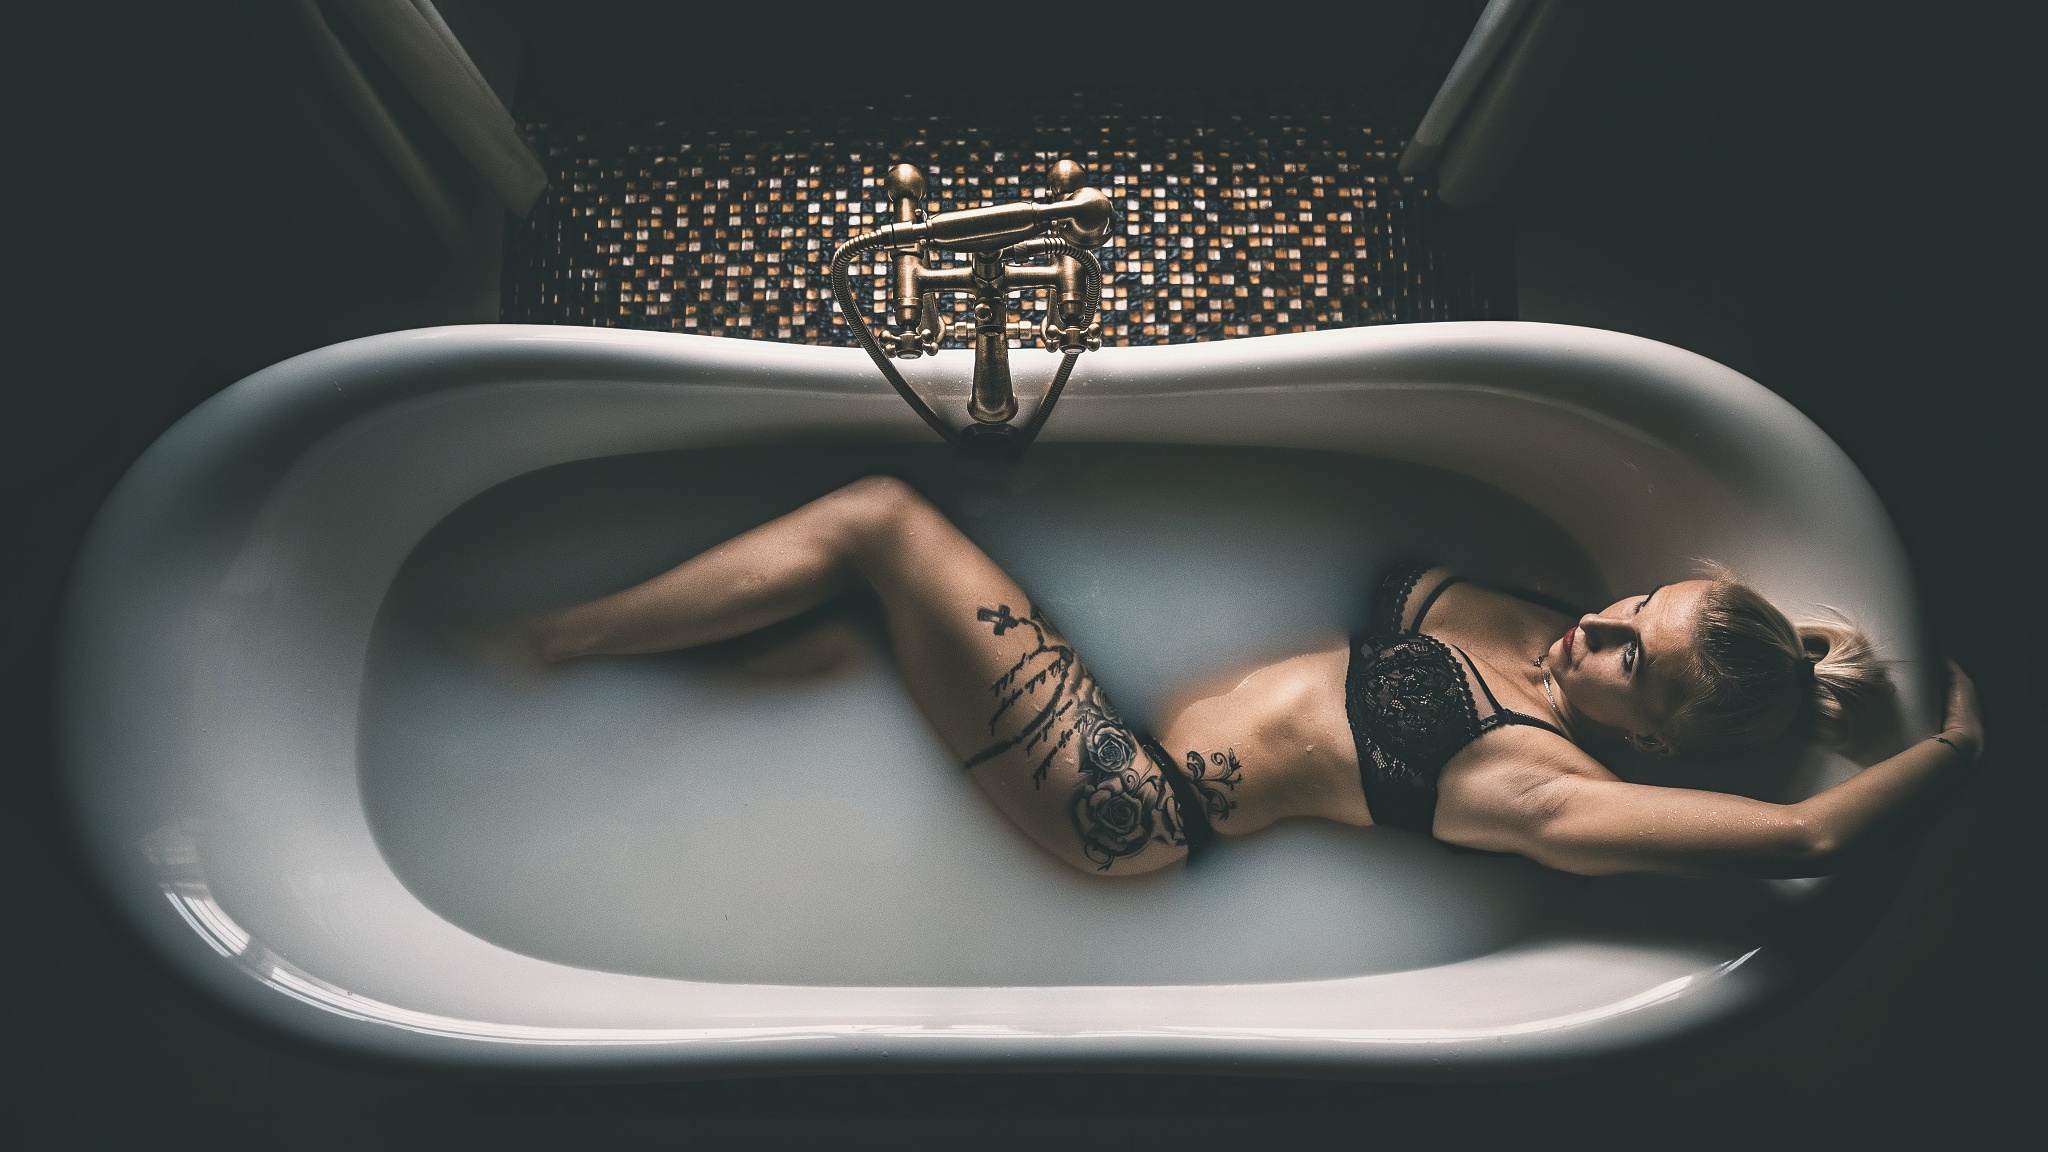 People 2048x1152 women model in bathtub women indoors indoors bathtub inked girls legs bra black bras